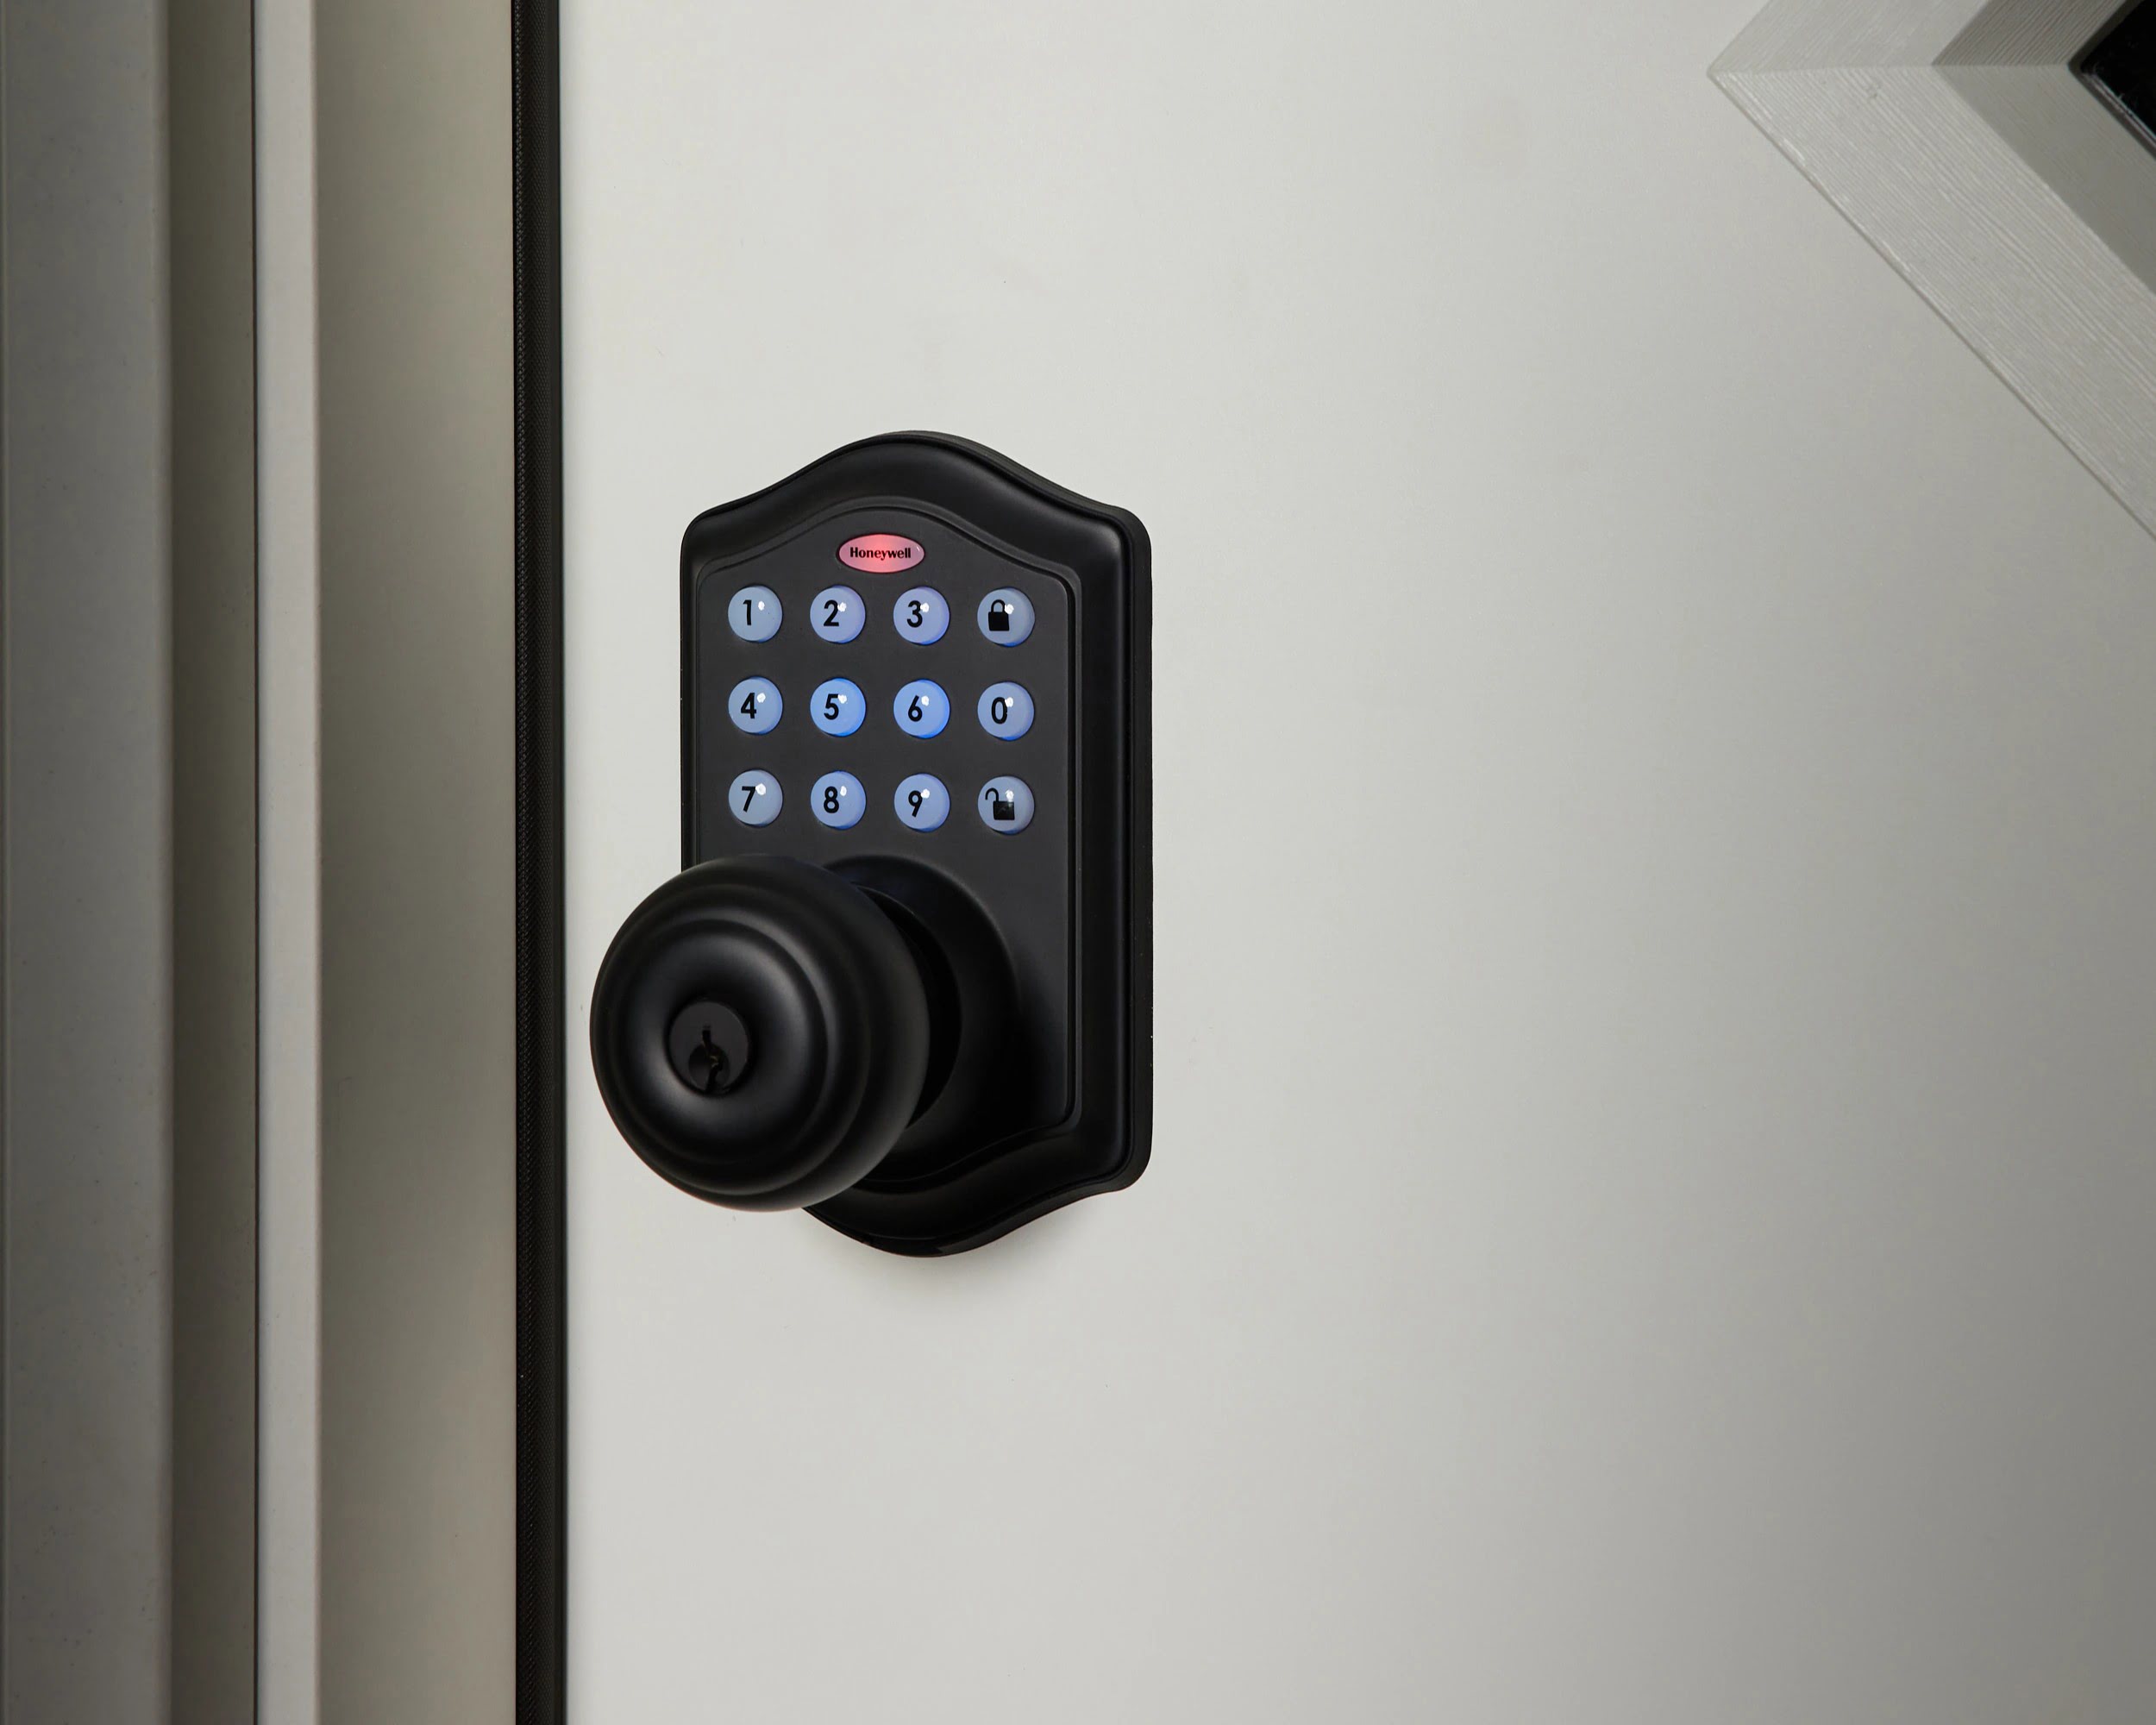 How To Change Code On Honeywell Door Lock